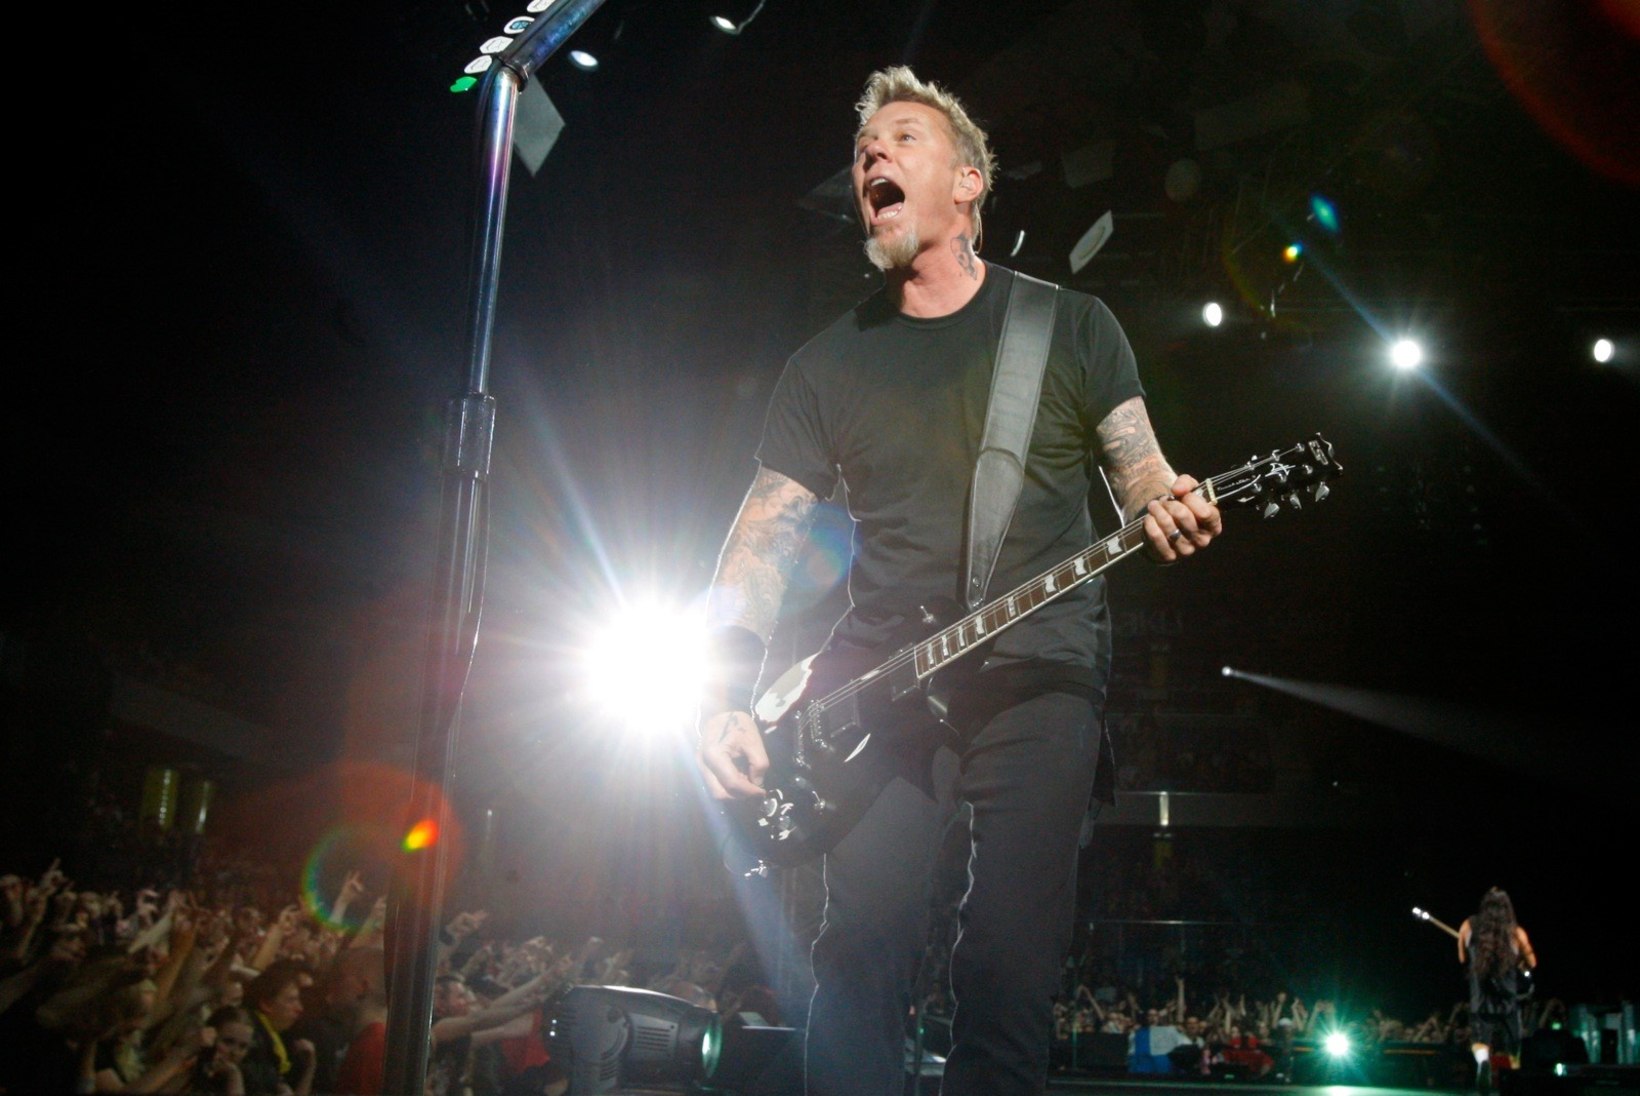 Pane tähele! Metallica kontsert toob palju liiklusmuudatusi